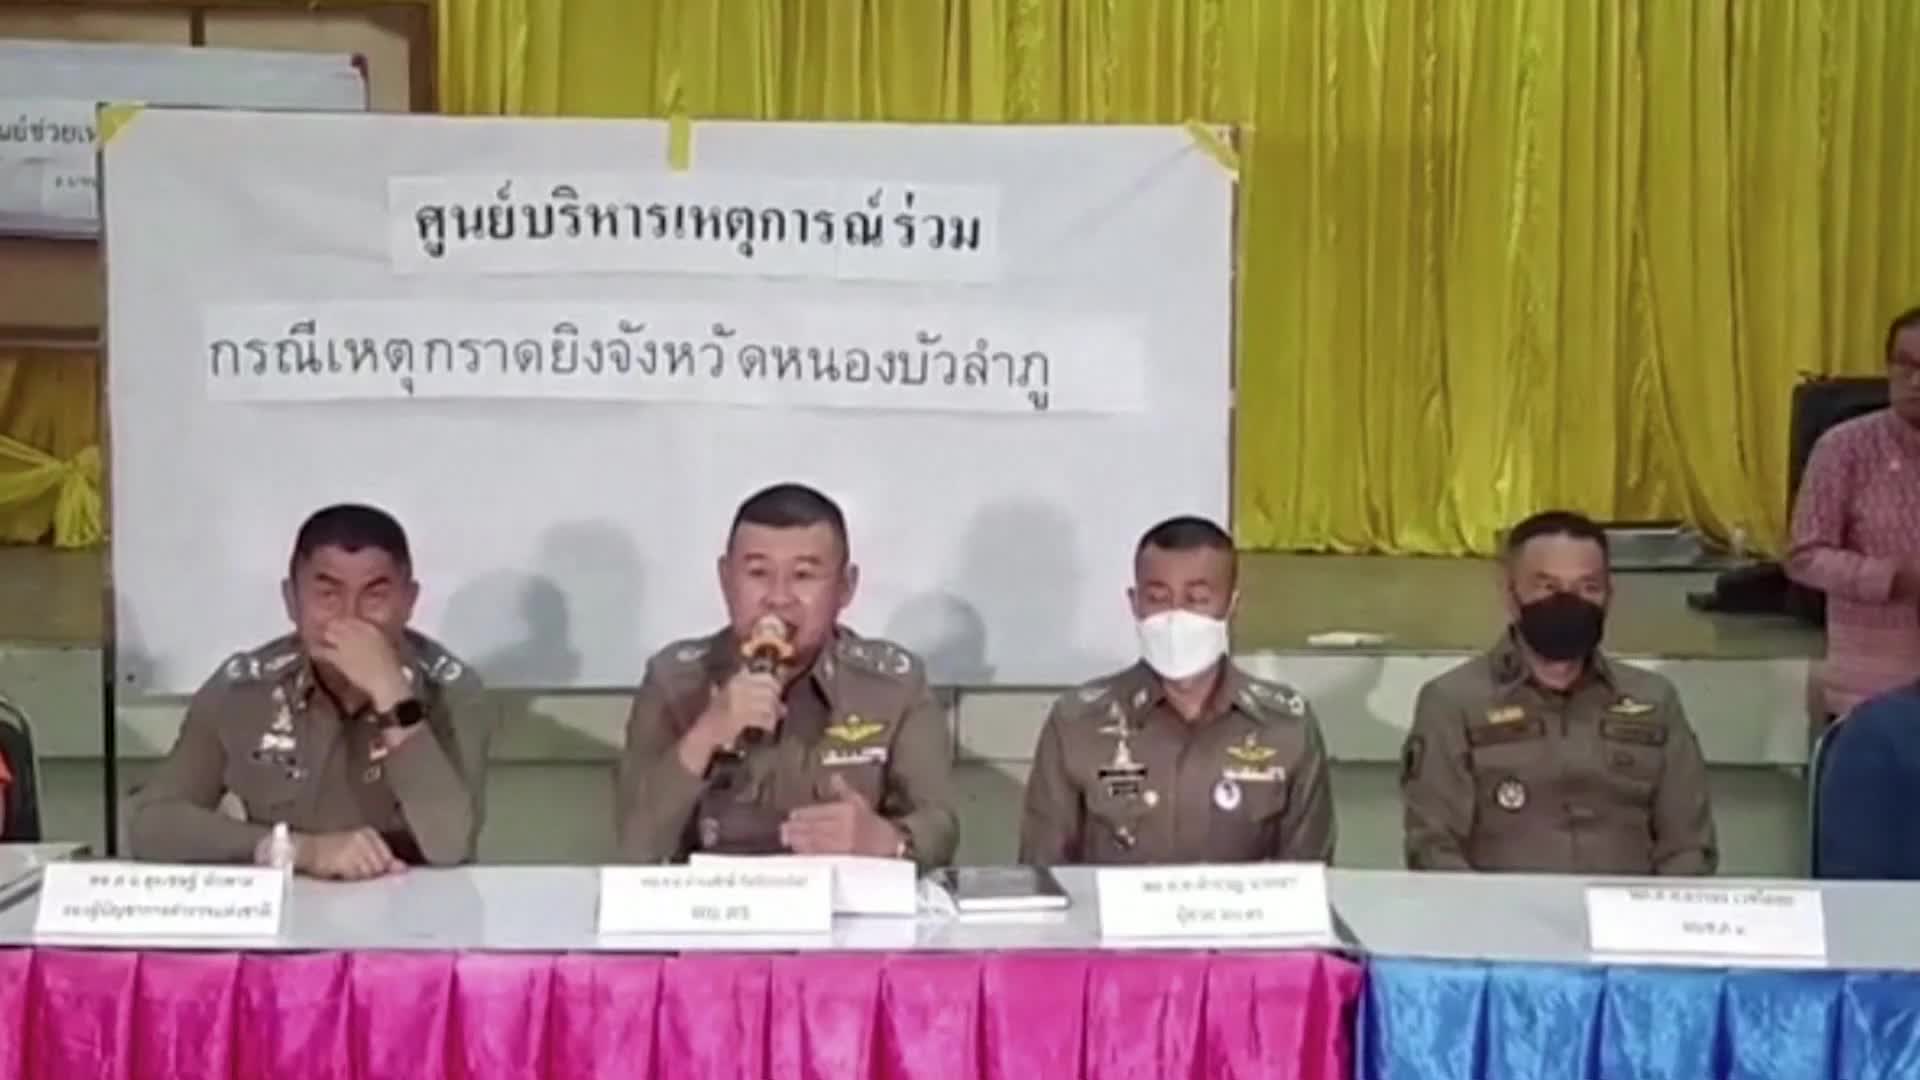 Масова стрелба в детска градина в Тайланд, над 30 убити (ВИДЕО)